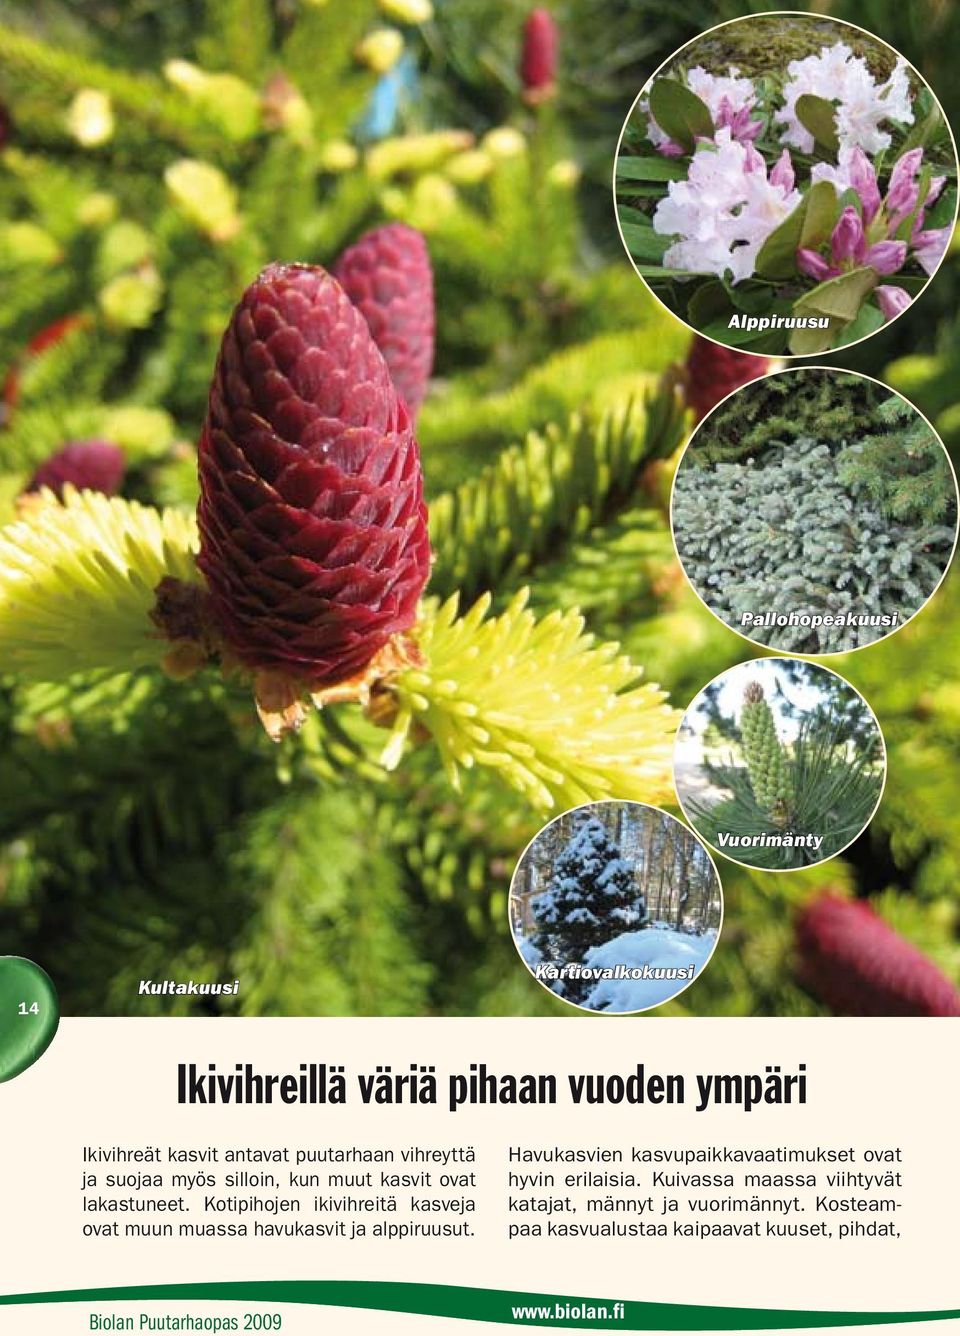 Kotipihojen ikivihreitä kasveja ovat muun muassa havukasvit ja alppiruusut.